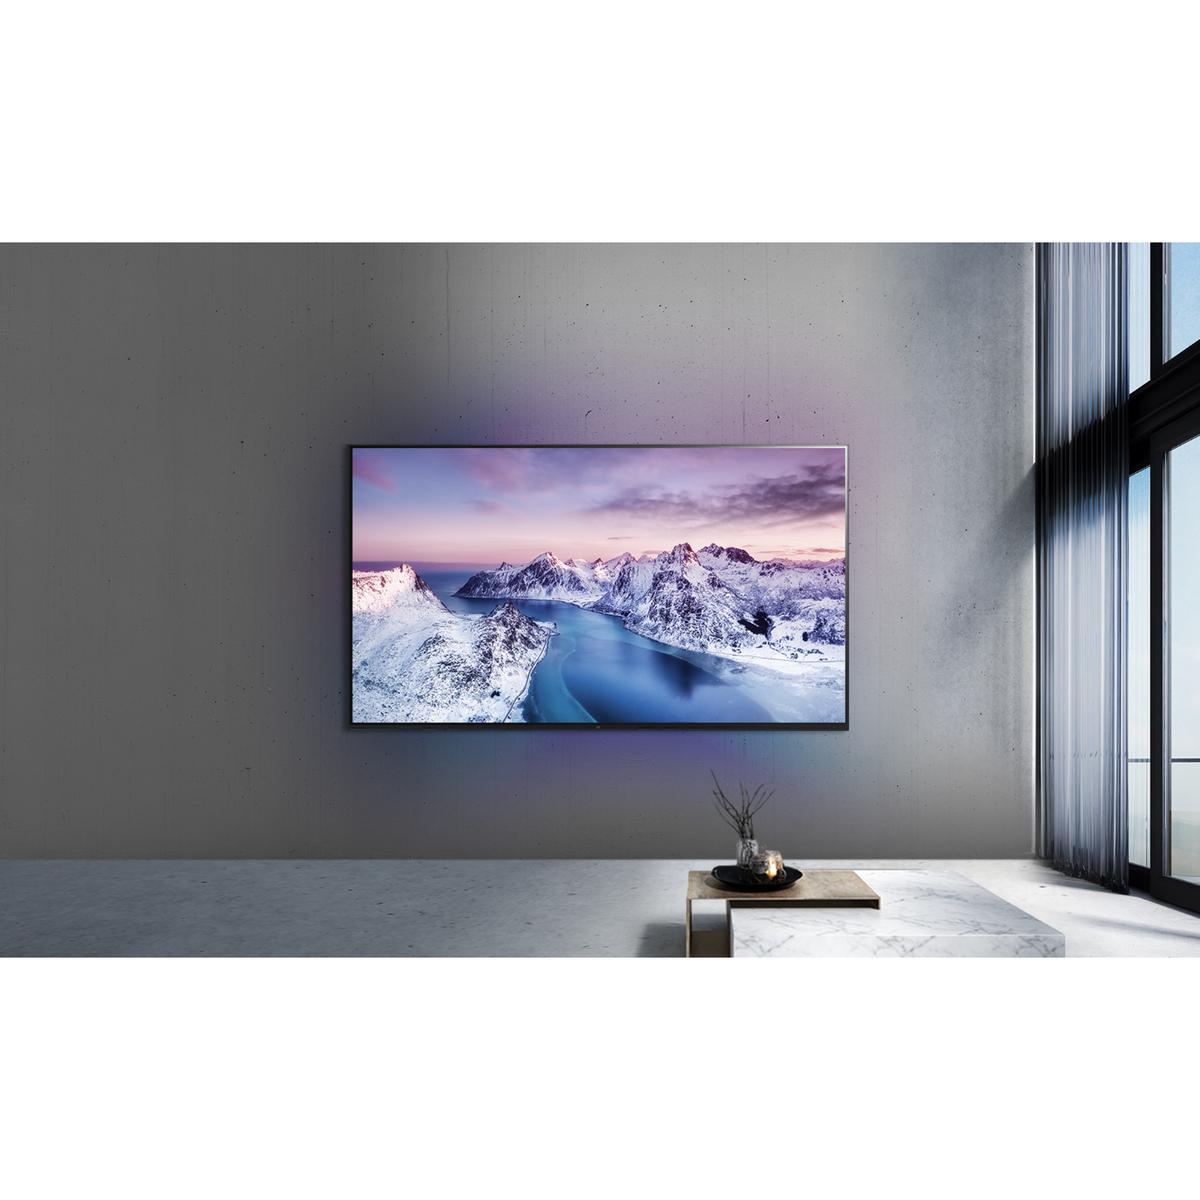 LG 75 Inches 4K UHD Smart TV, 75UR78006LLAMAG, Magic remote, HDR, WebOS